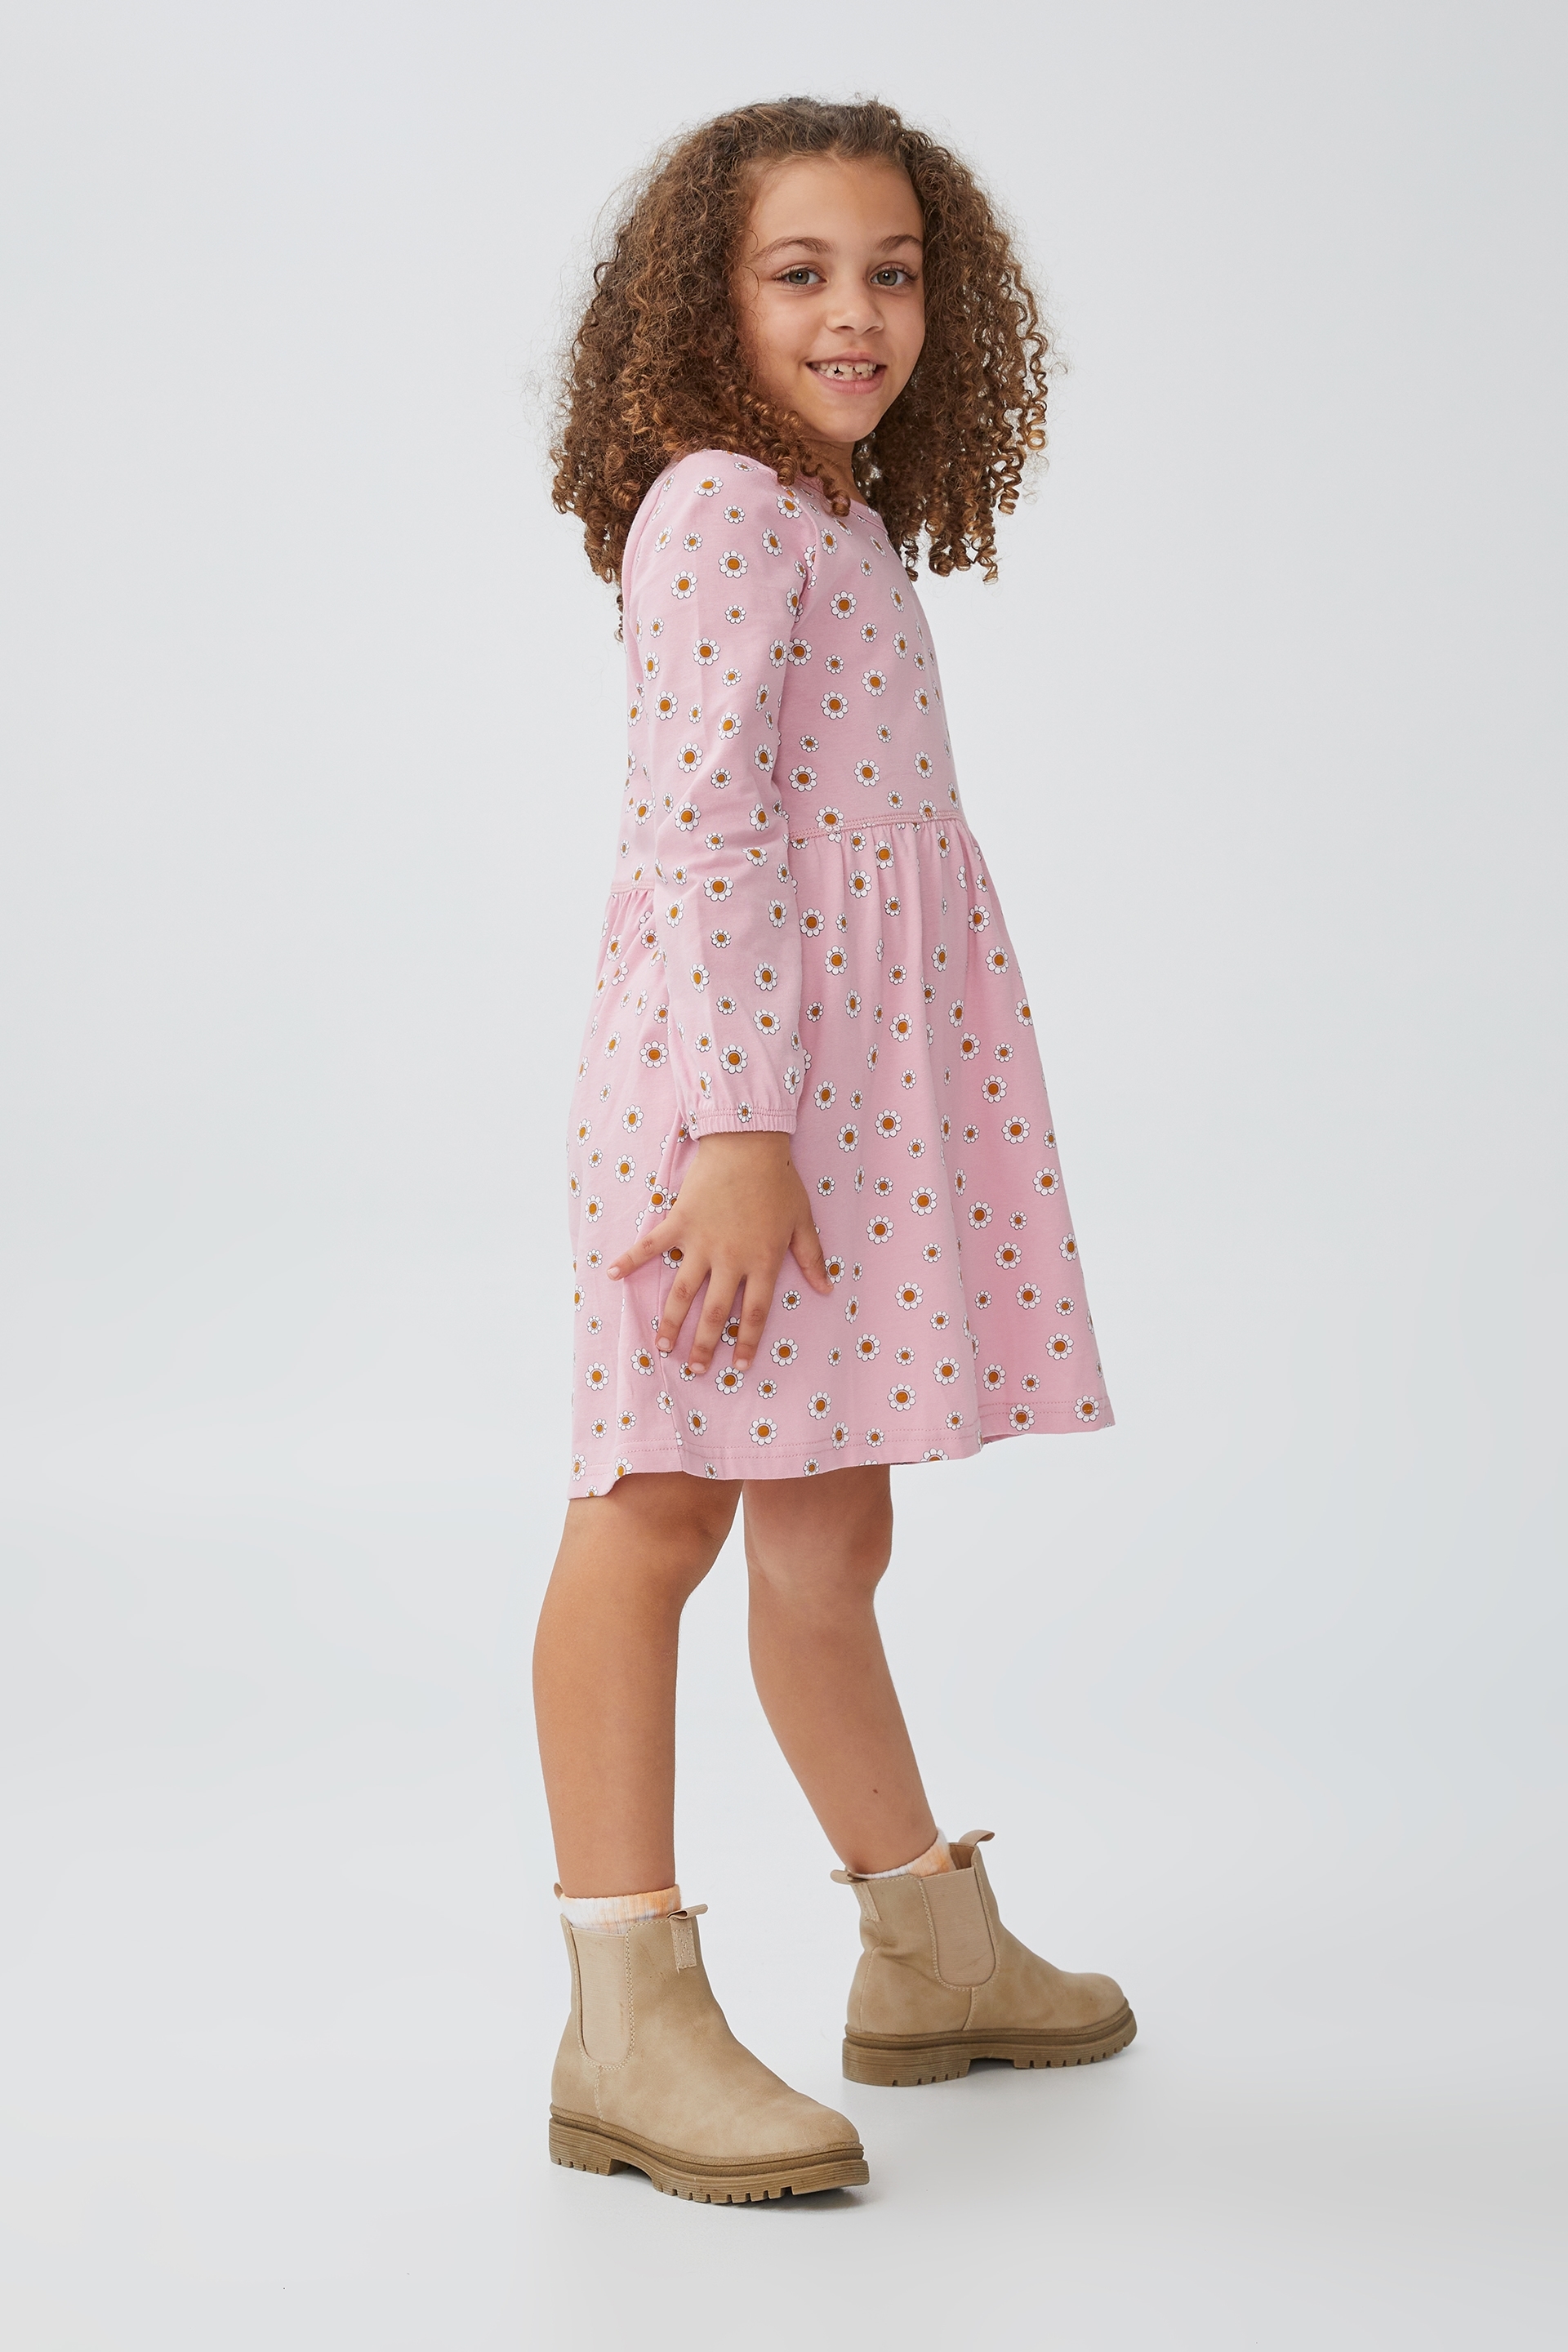 Cotton On Kids - Savannah Long Sleeve Dress - Marshmallow/garden daisy